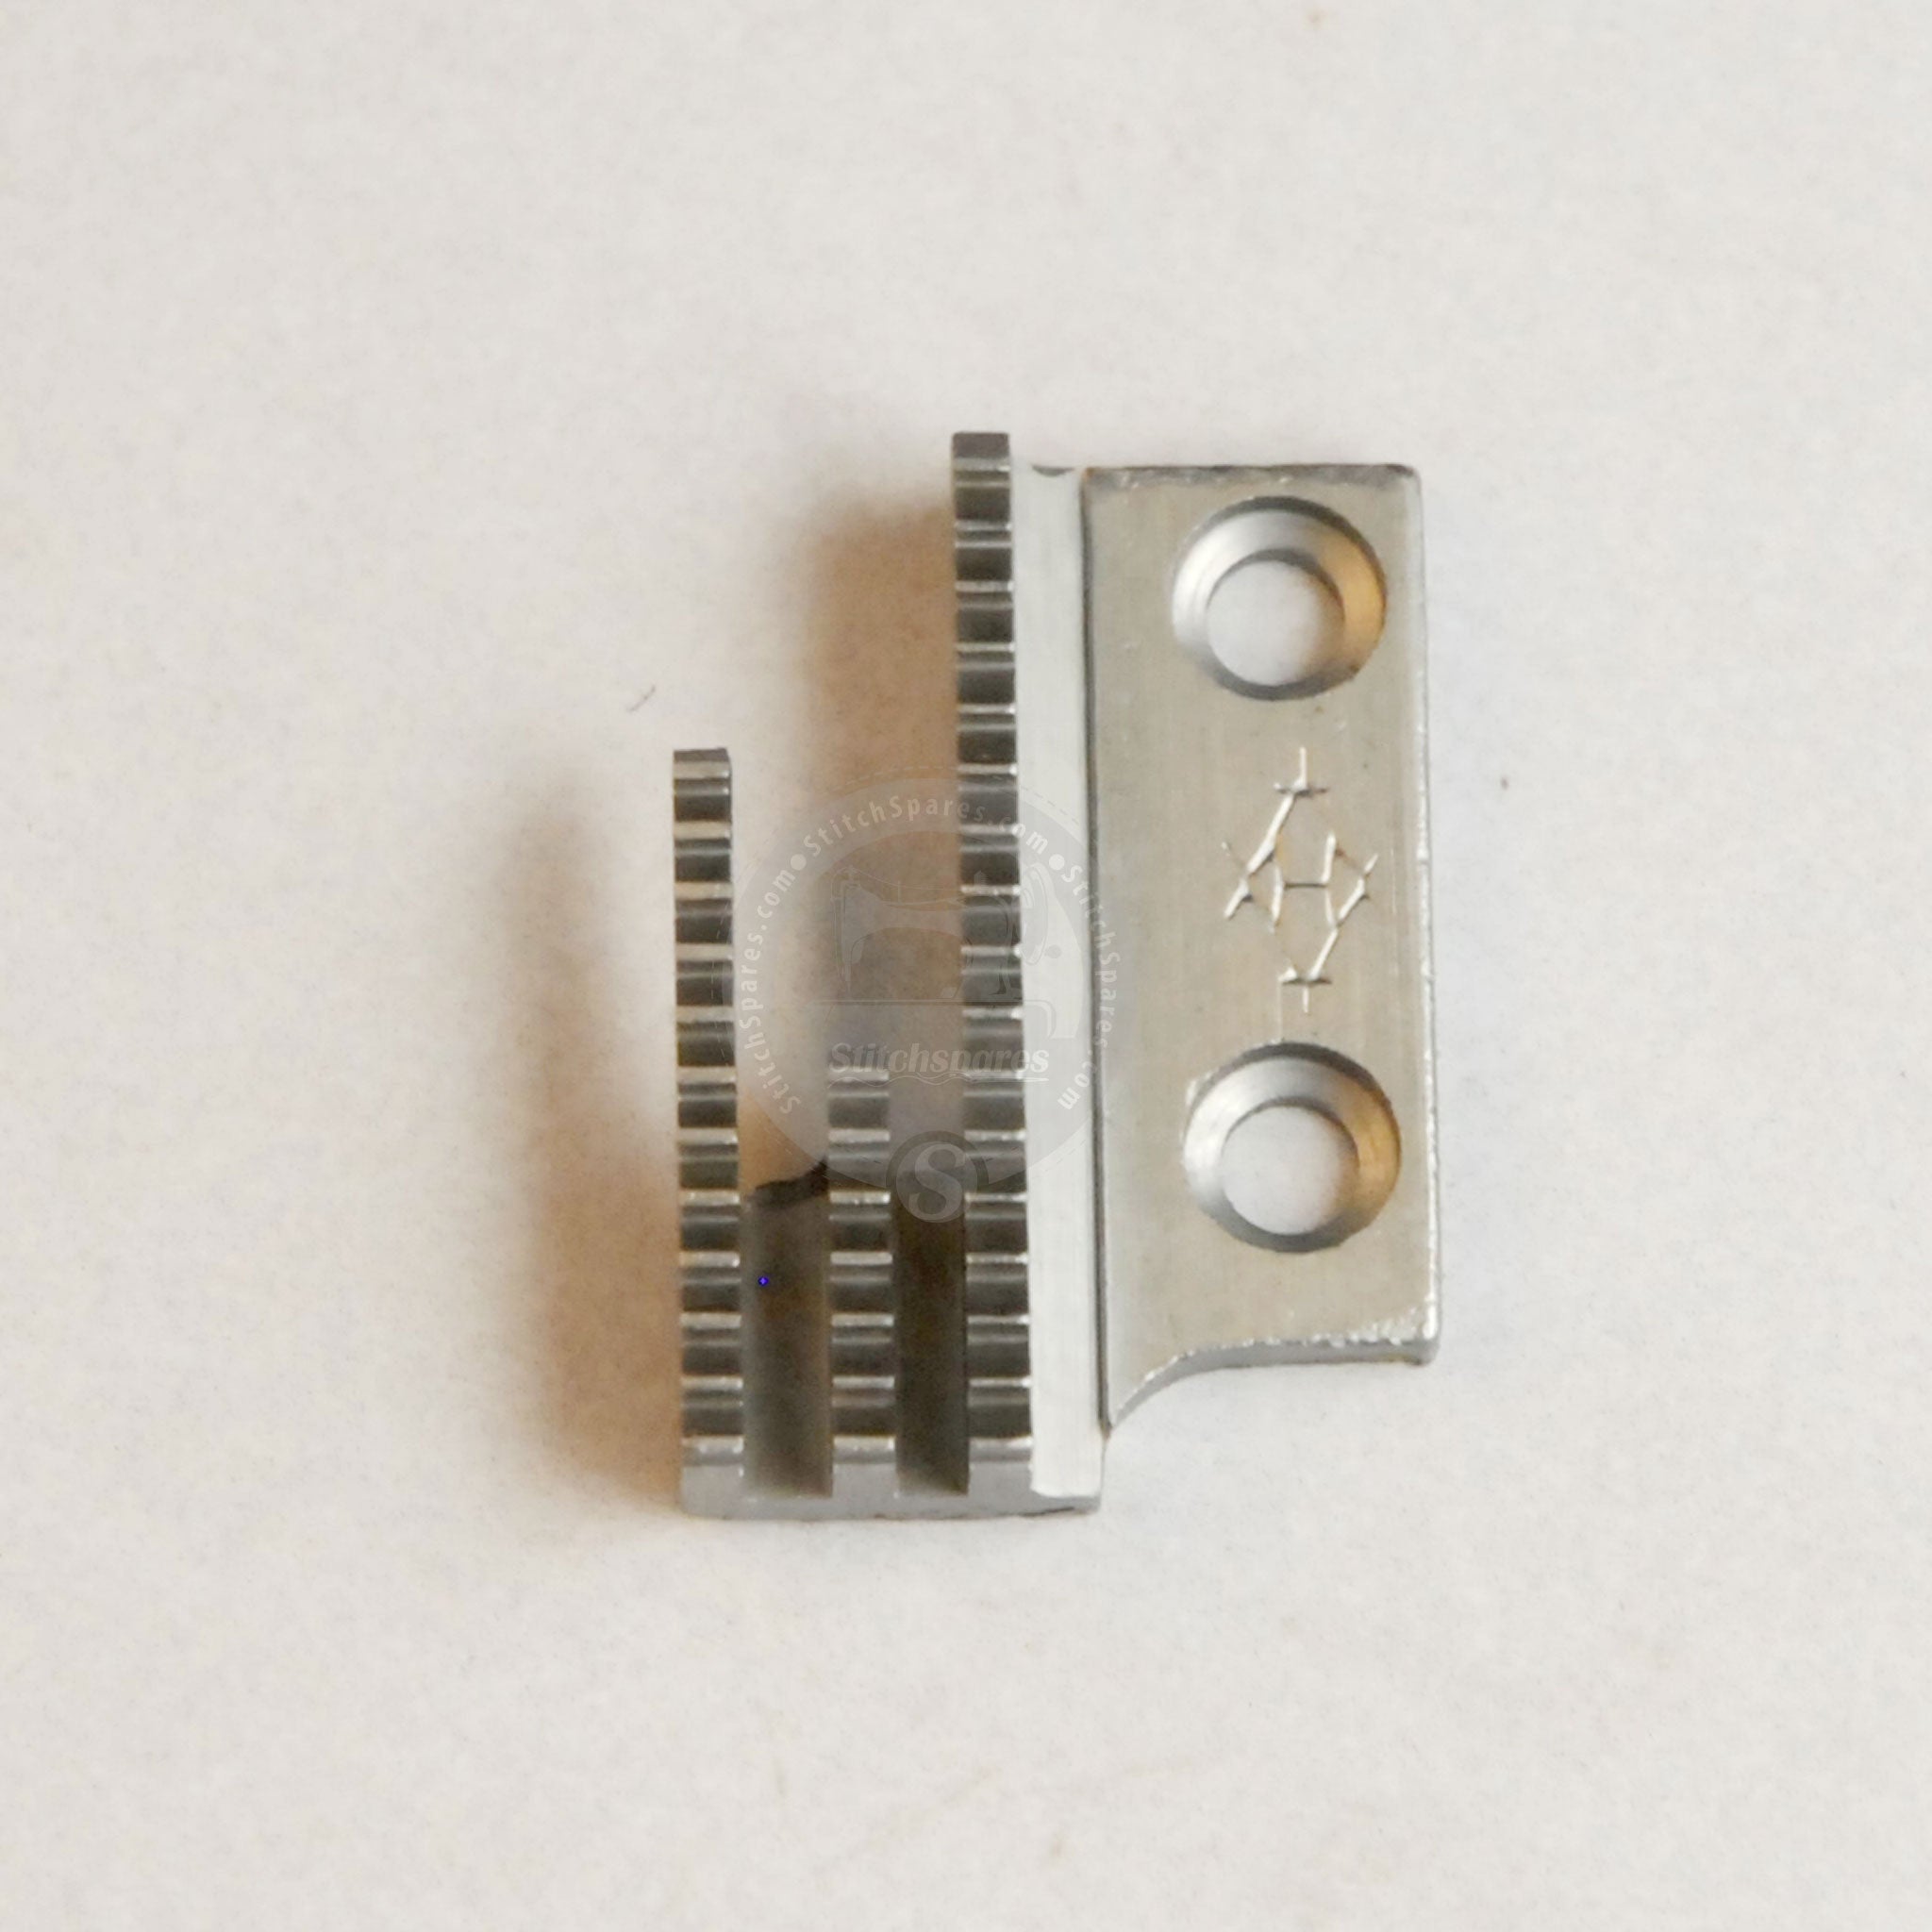 12481 Máquina de coser y coser de una sola aguja Juki con dientes de arrastre tipo B